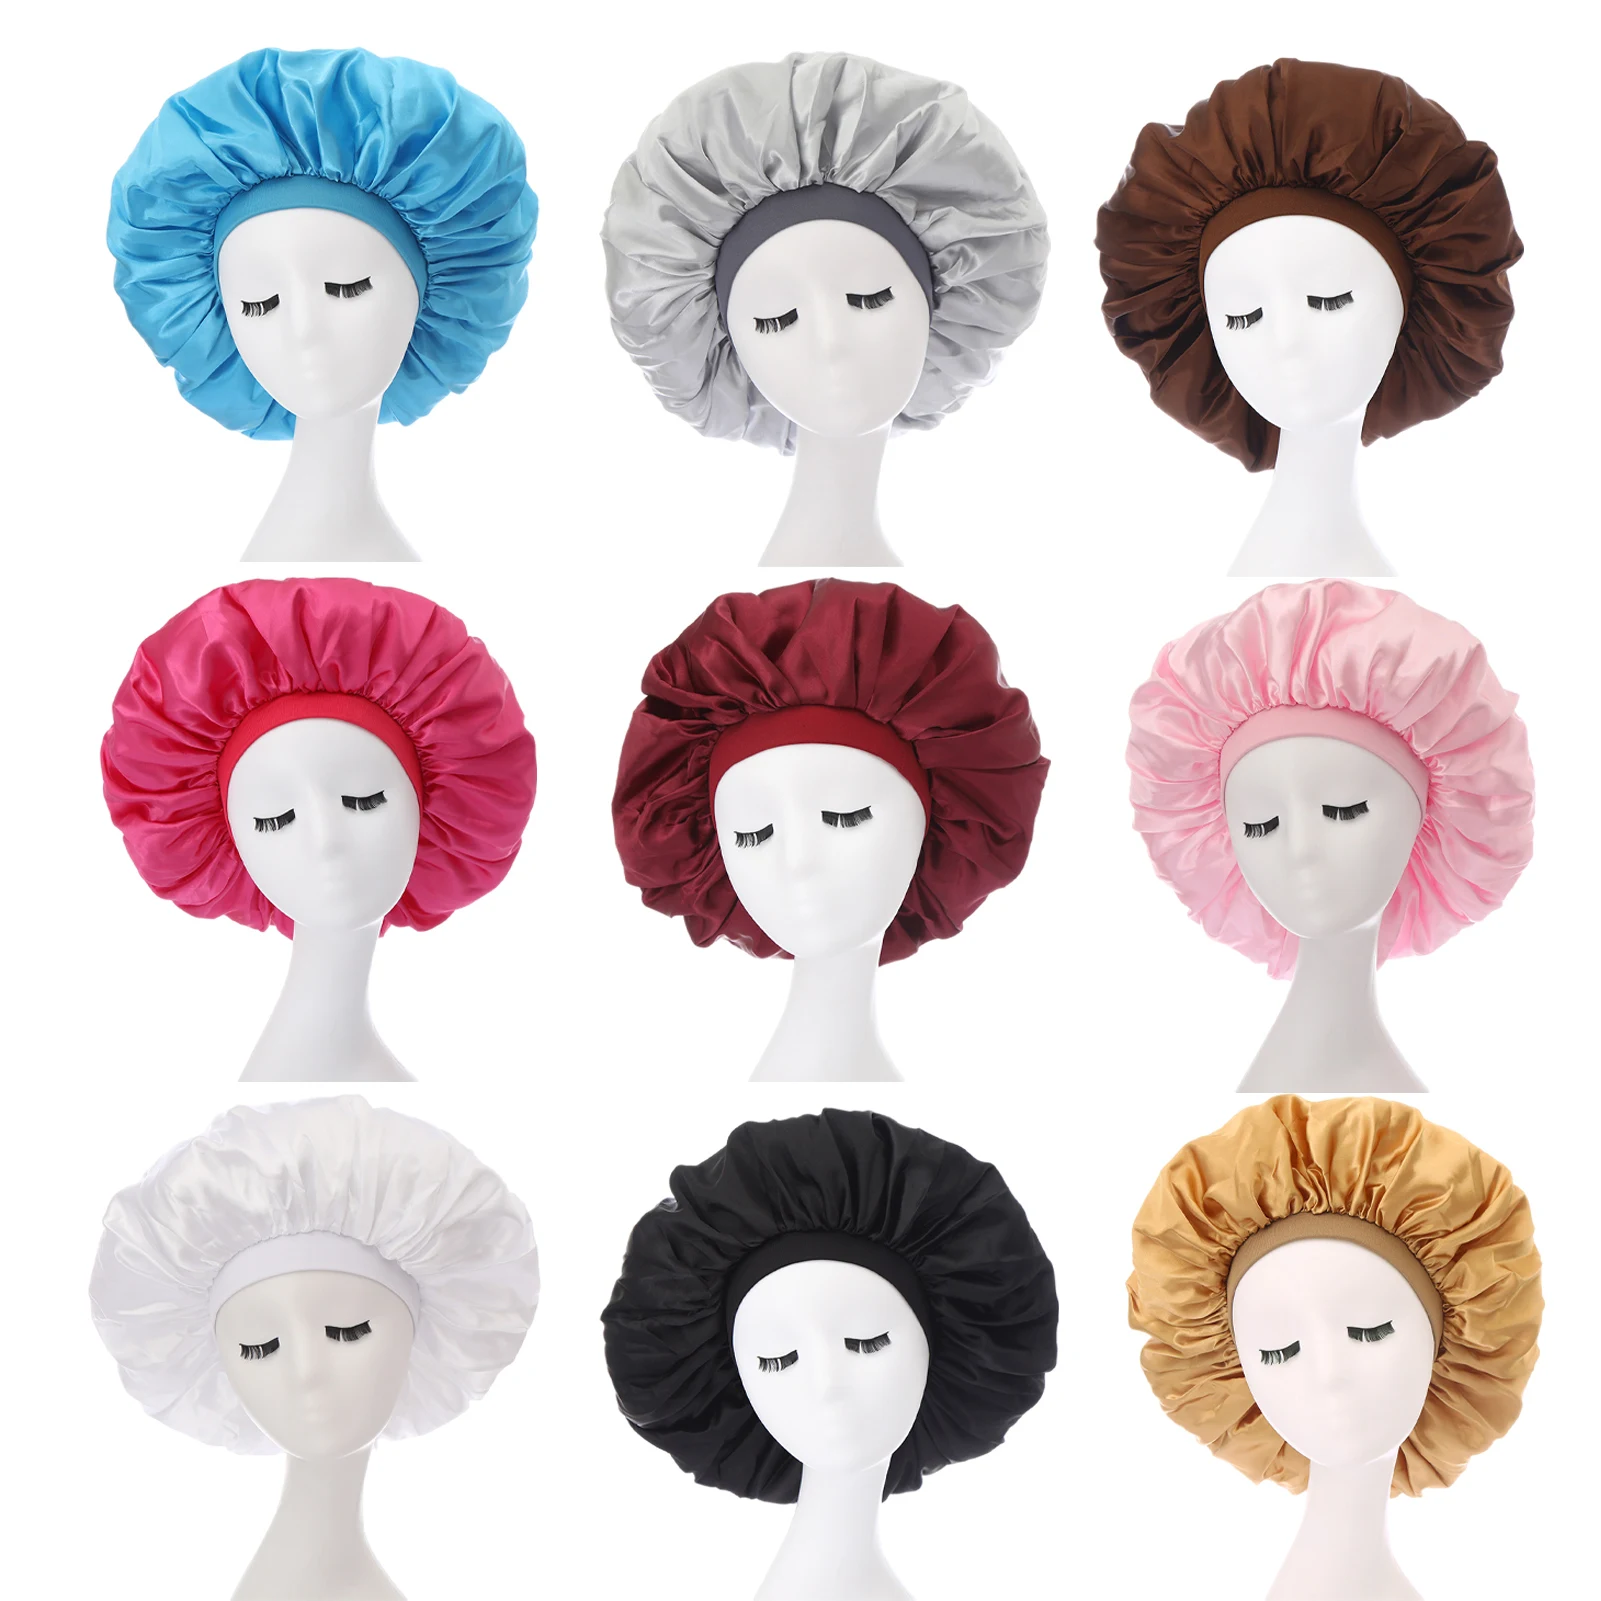 

Женская атласная Кепка для ночного сна, модная шапка для волос, Шелковый головной убор, широкая эластичная лента